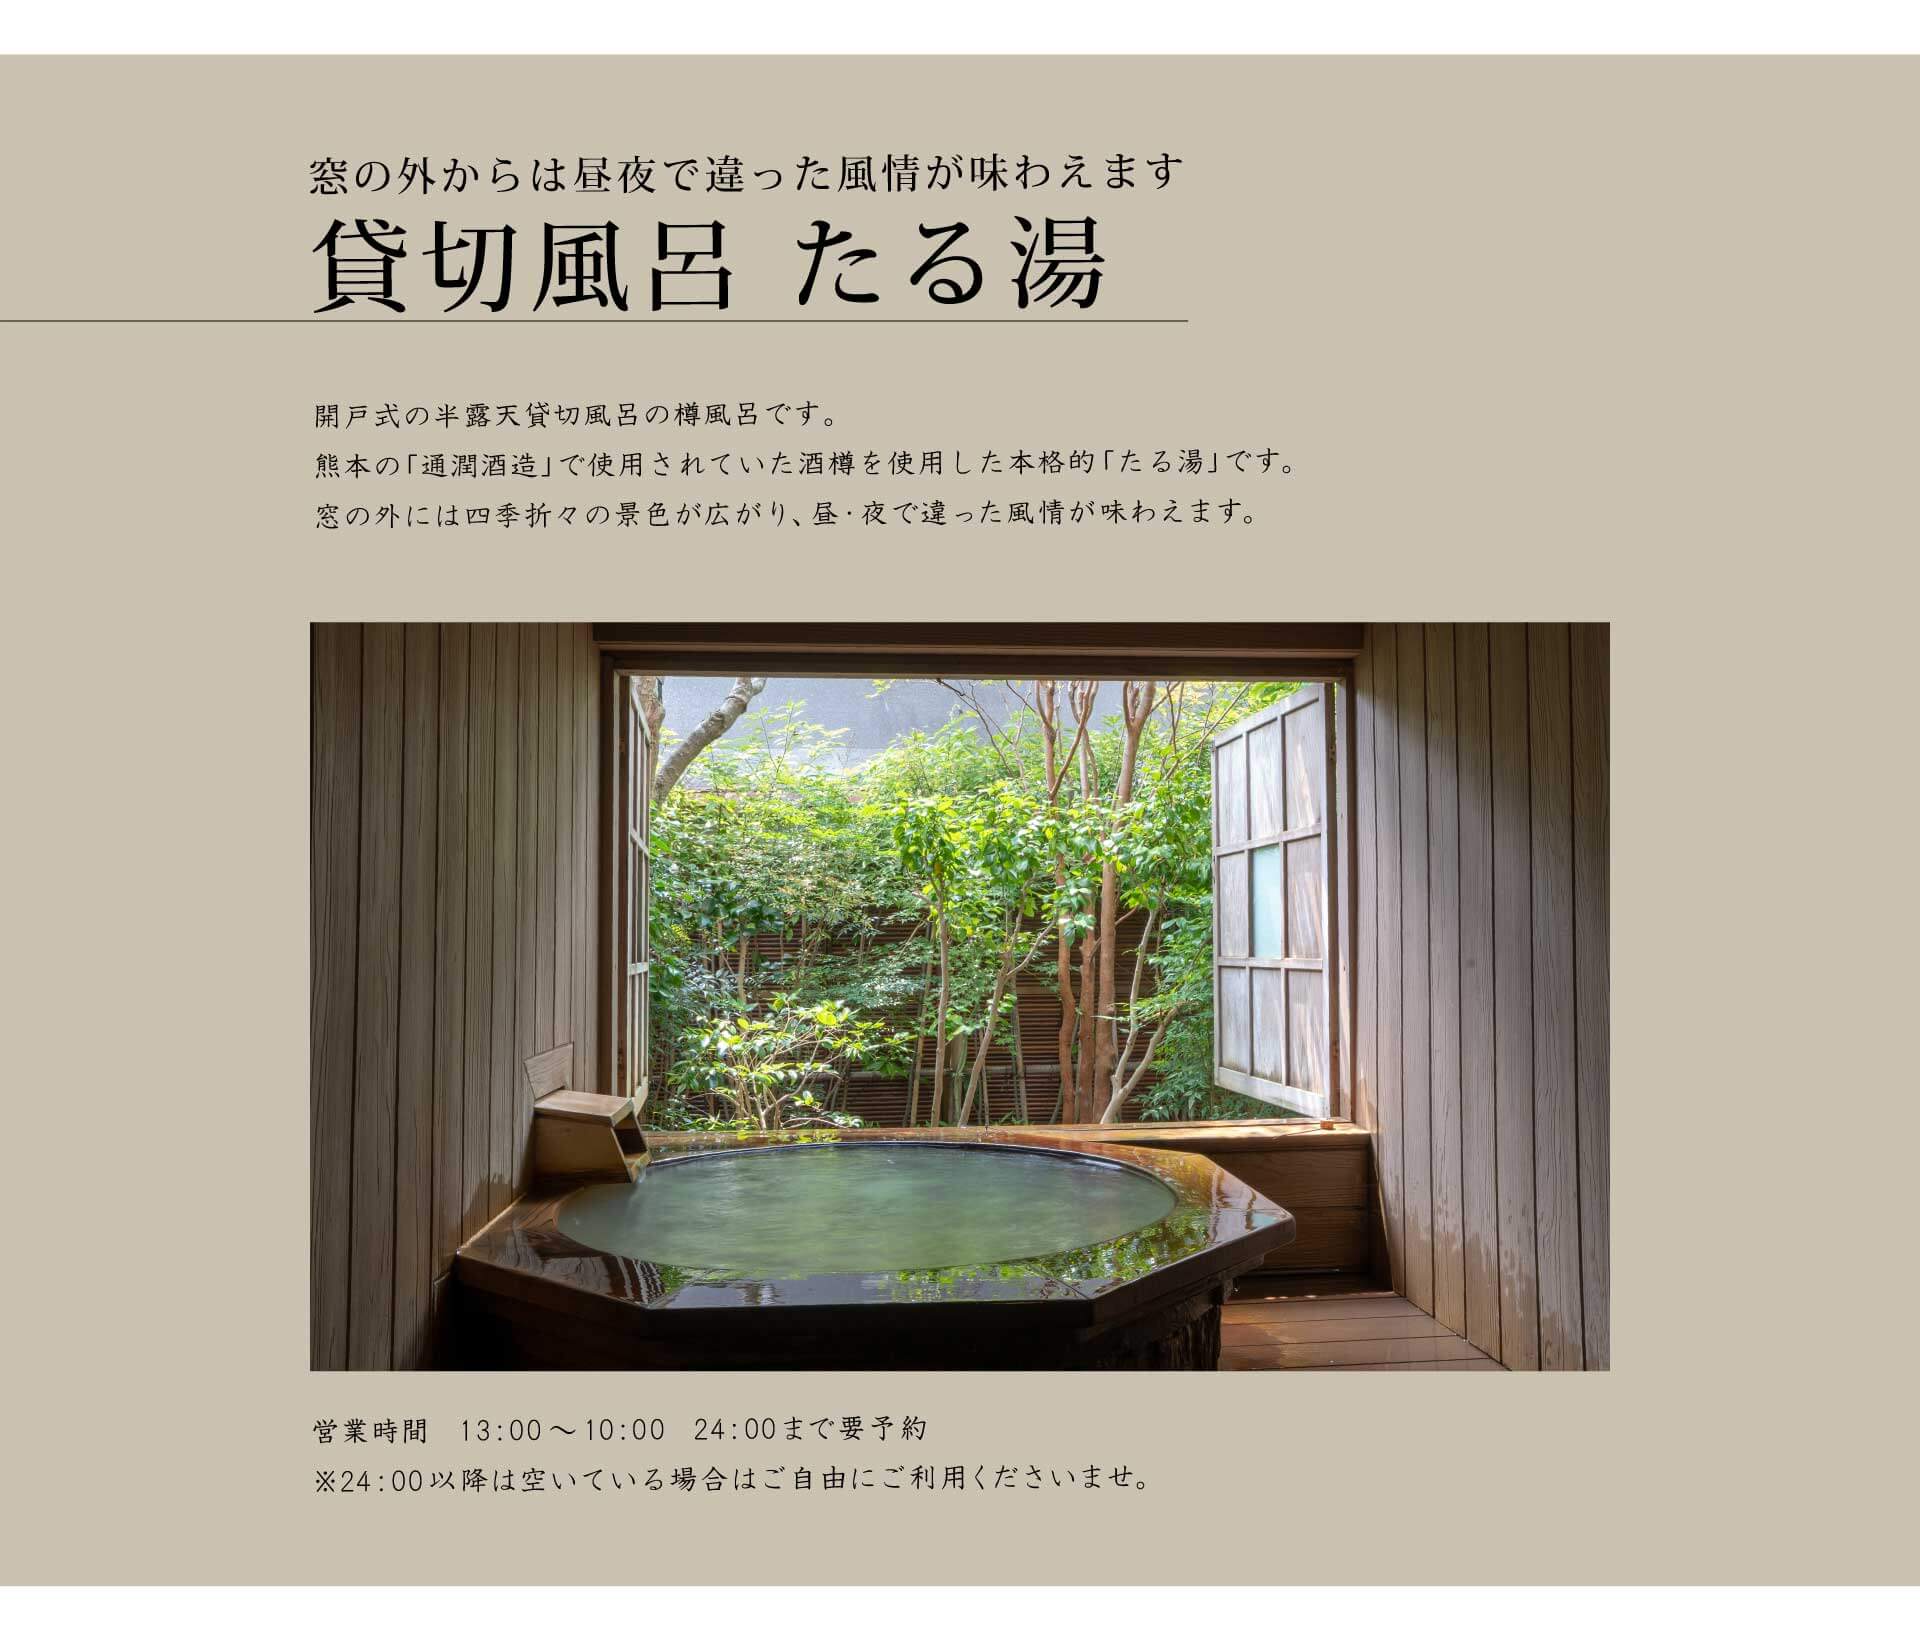 窓の外からは昼夜で違った風情が味わえます　貸切風呂 たる湯　開戸式の半露天貸切風呂の樽風呂です。熊本の「通潤酒造」で使用されていた酒樽を使用した本格的「たる湯」です。窓の外には四季折々の景色が広がり、昼・夜で違った風情が味わえます。　営業時間　13：00〜10：00　24：00まで要予約　※24：00以降は空いている場合はご自由にご利用くださいませ。